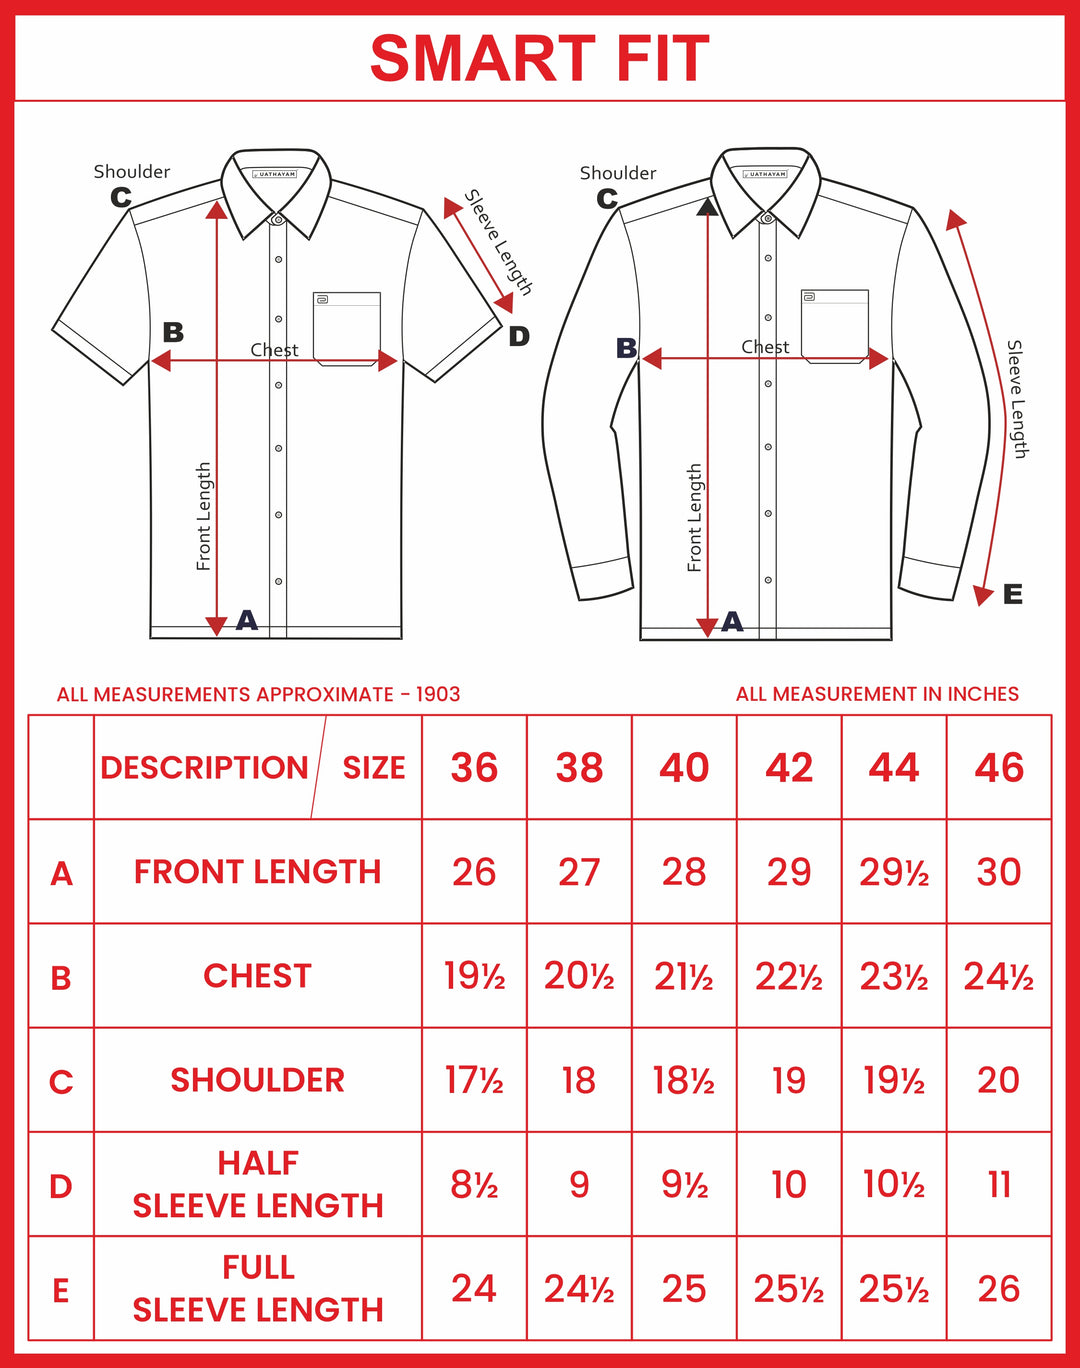 Ariser Linen Feel Solid Cotton Rich Smart Fit Half Sleeve Shirt for Men - LF2006